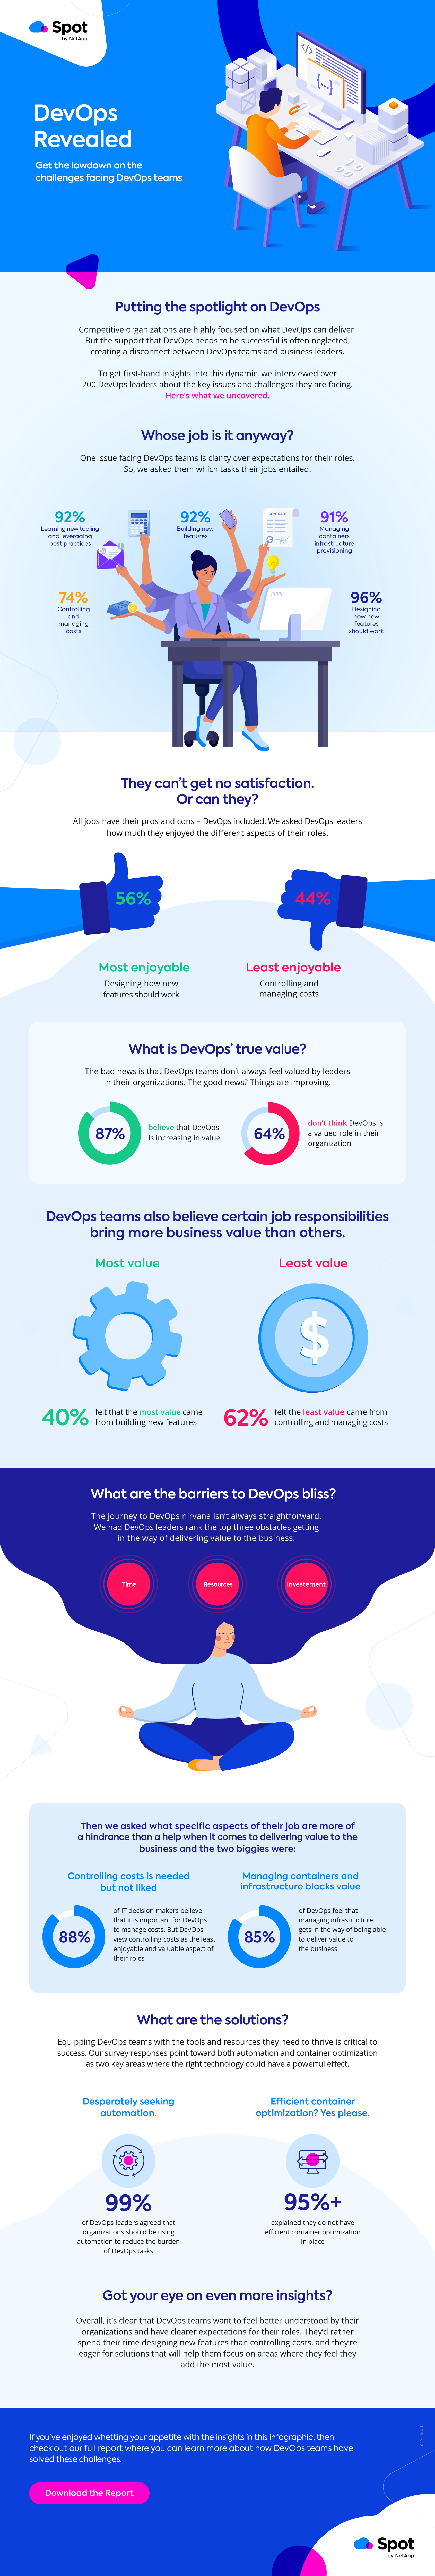 DevOps Revealed: challenges facing DevOps teams infographic